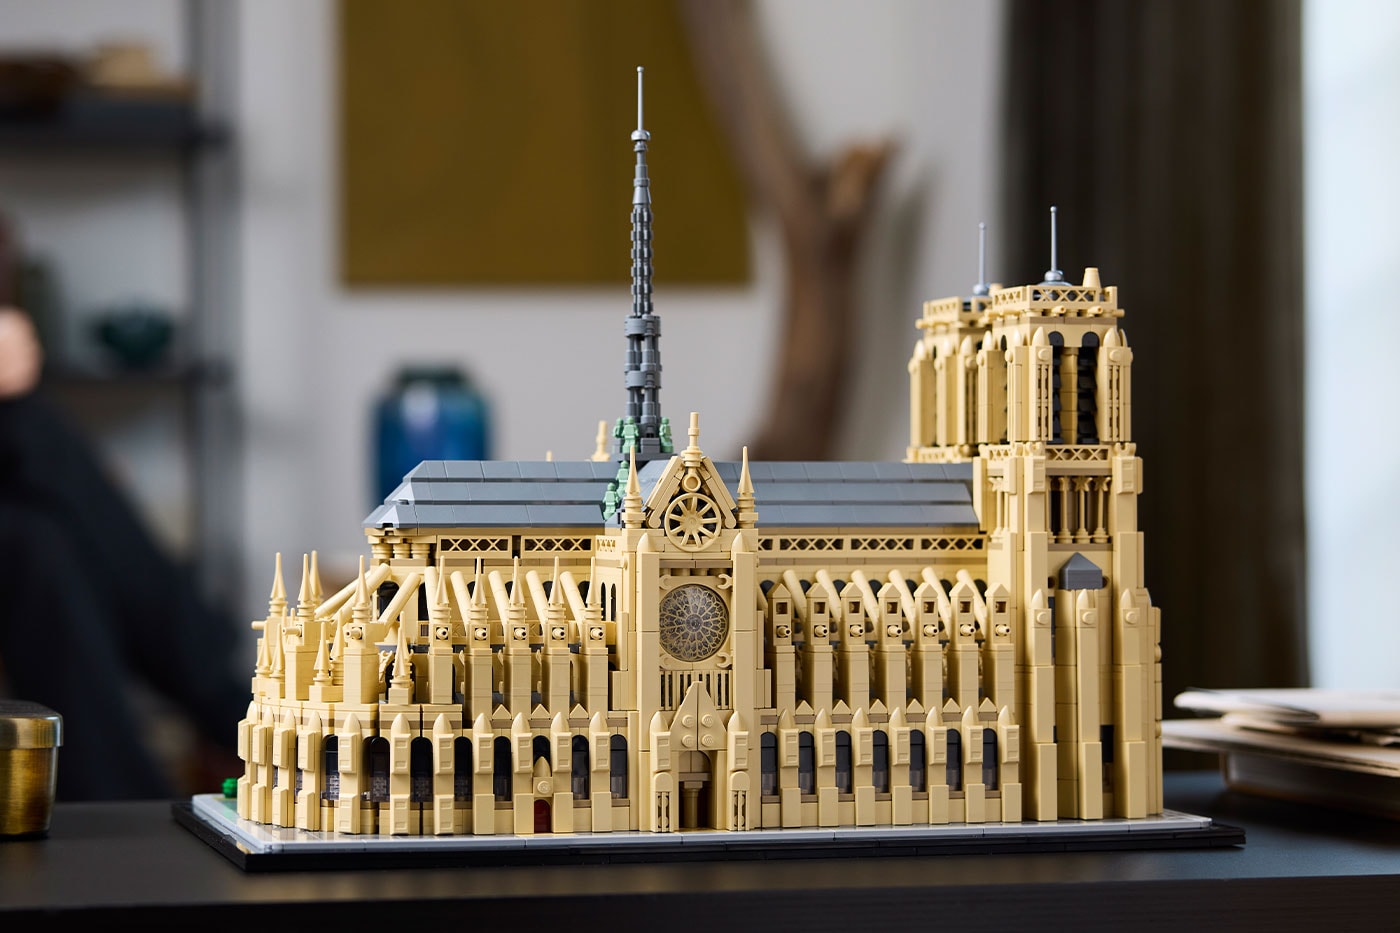 LEGO 推出全新《蒙娜麗莎》畫像與巴黎聖母院積木模型